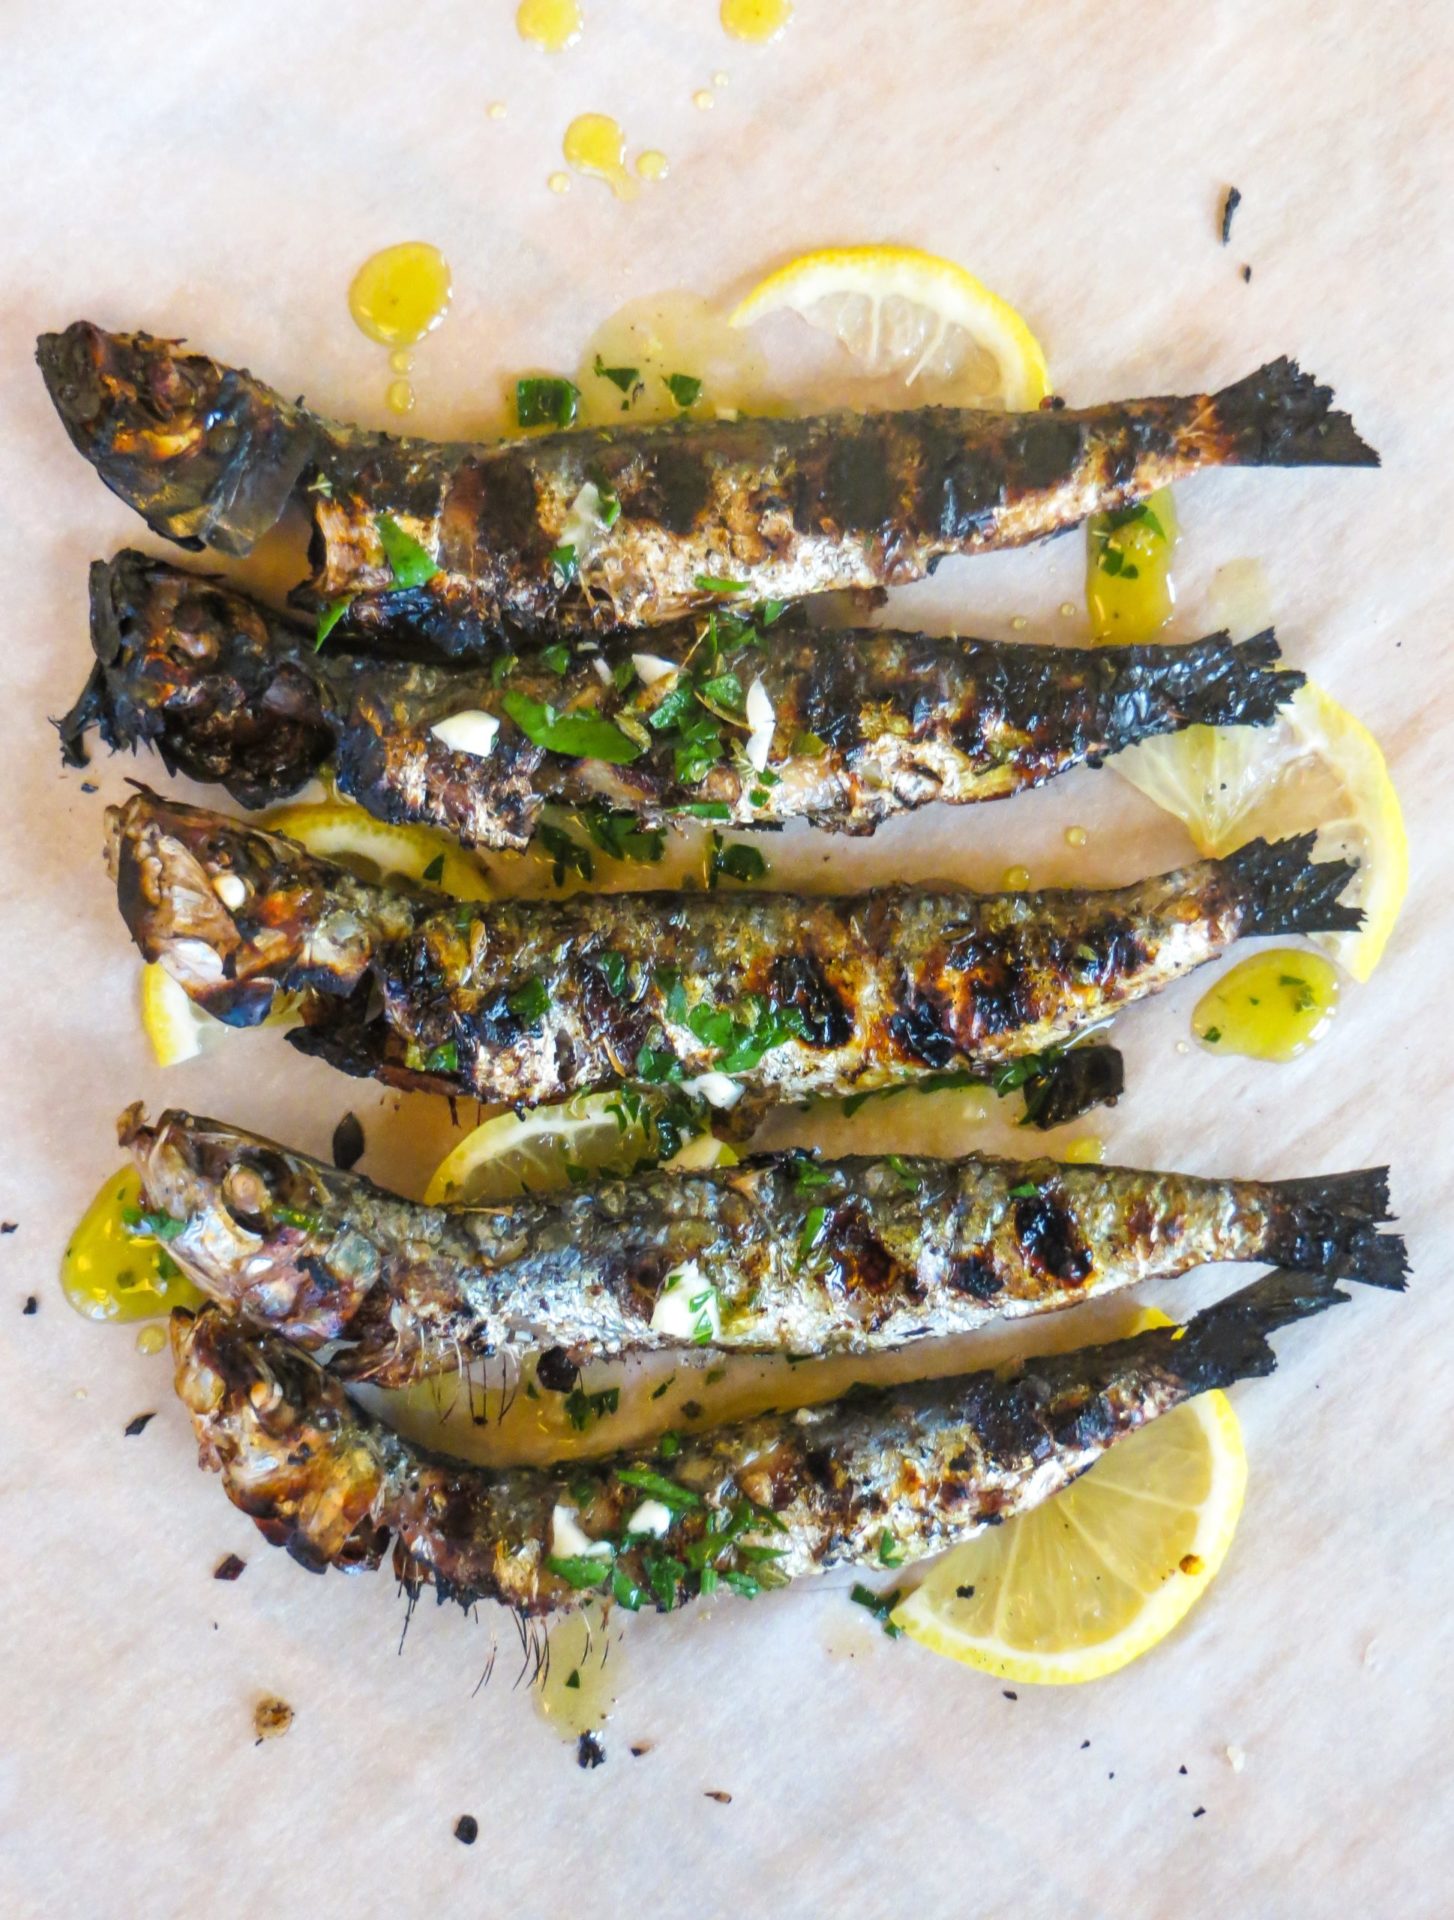 Espetos Recipe - Andalucia's Tasty Grilled Sardines - Visit